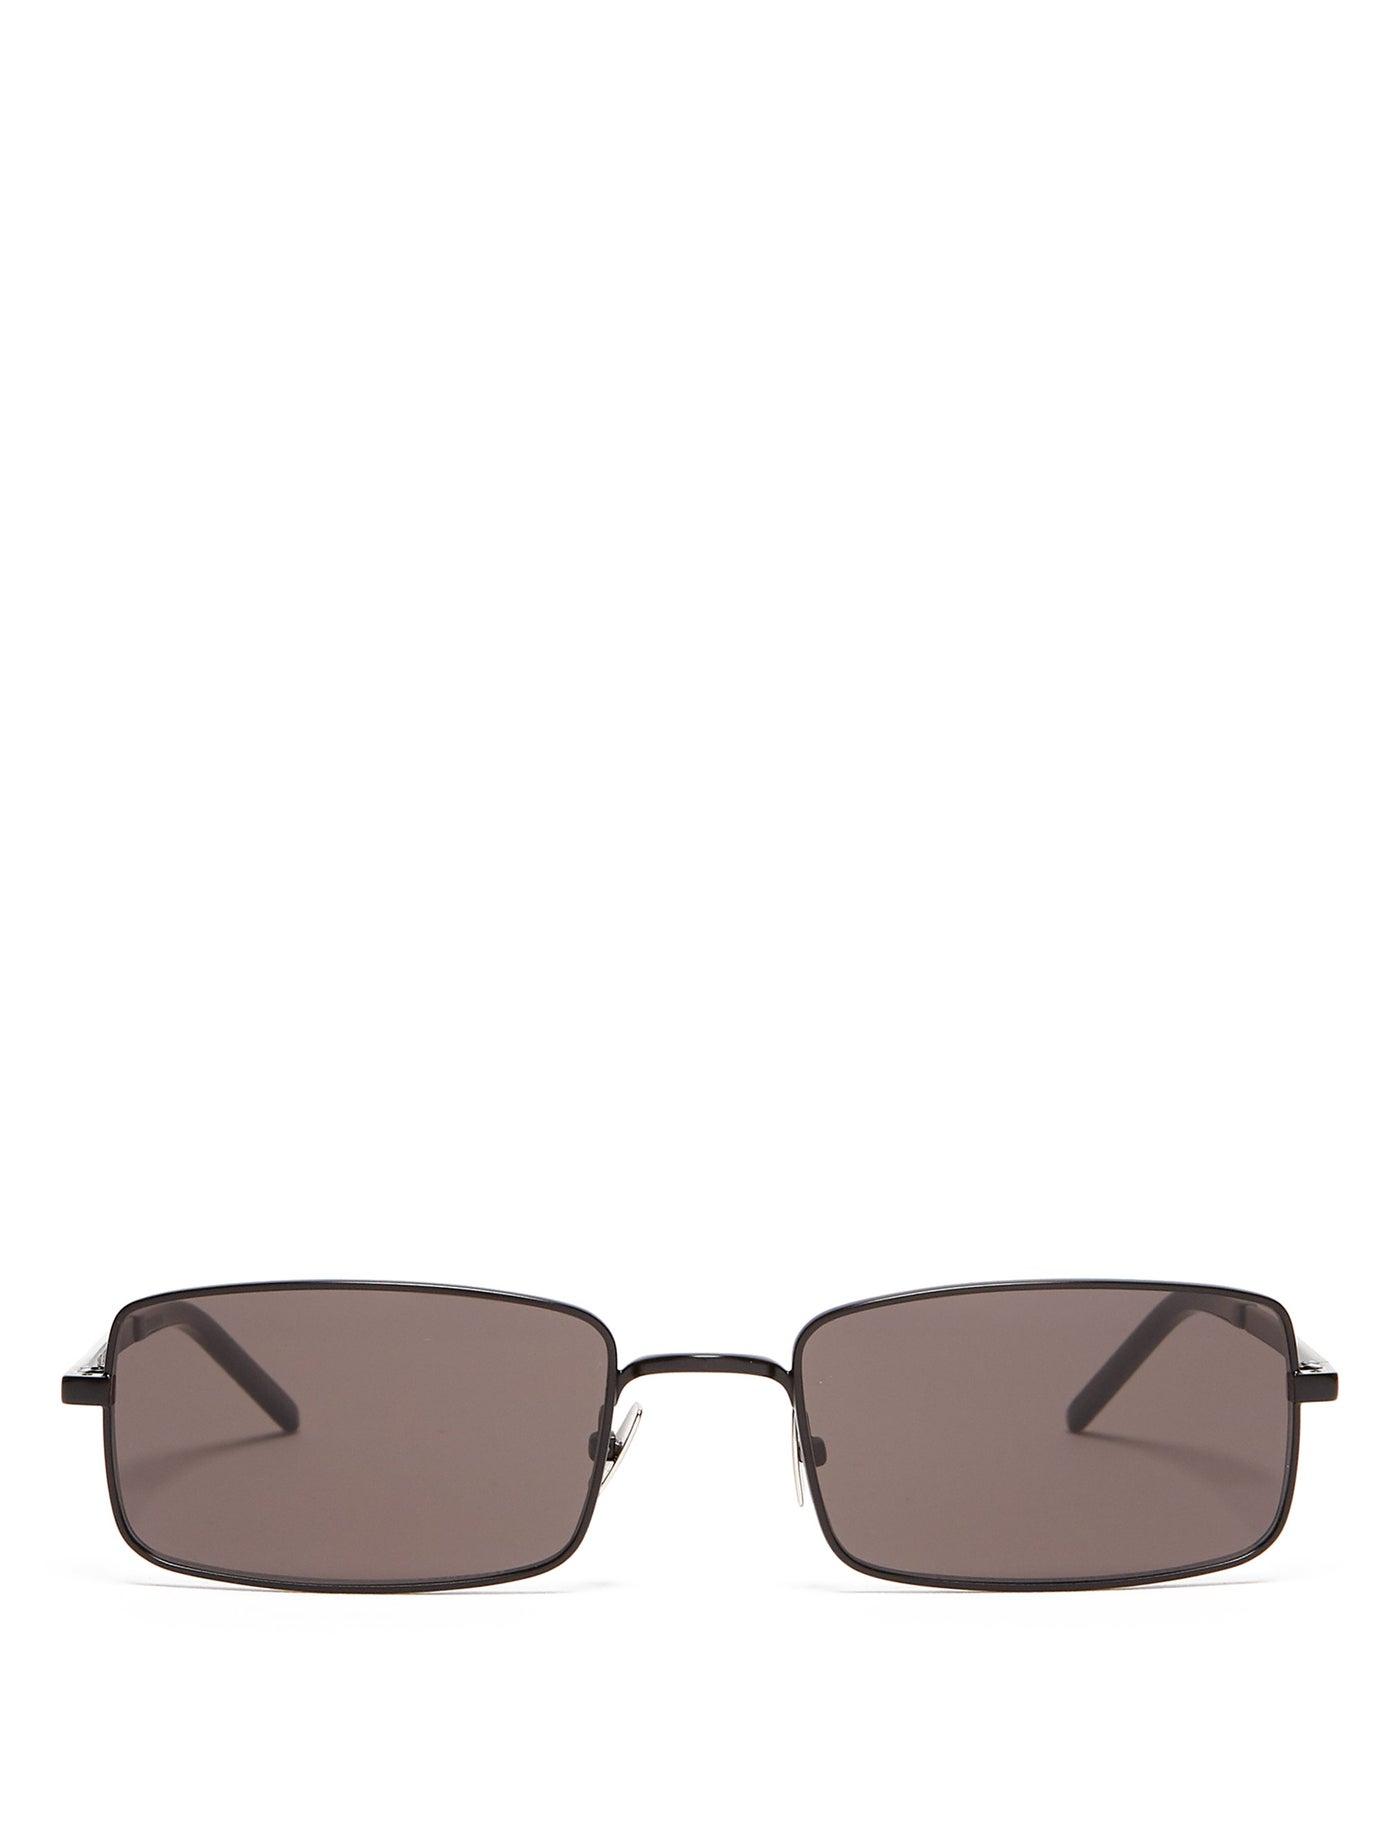 Saint Laurent Rectangular-frame Metal Sunglasses in Black for Men - Lyst